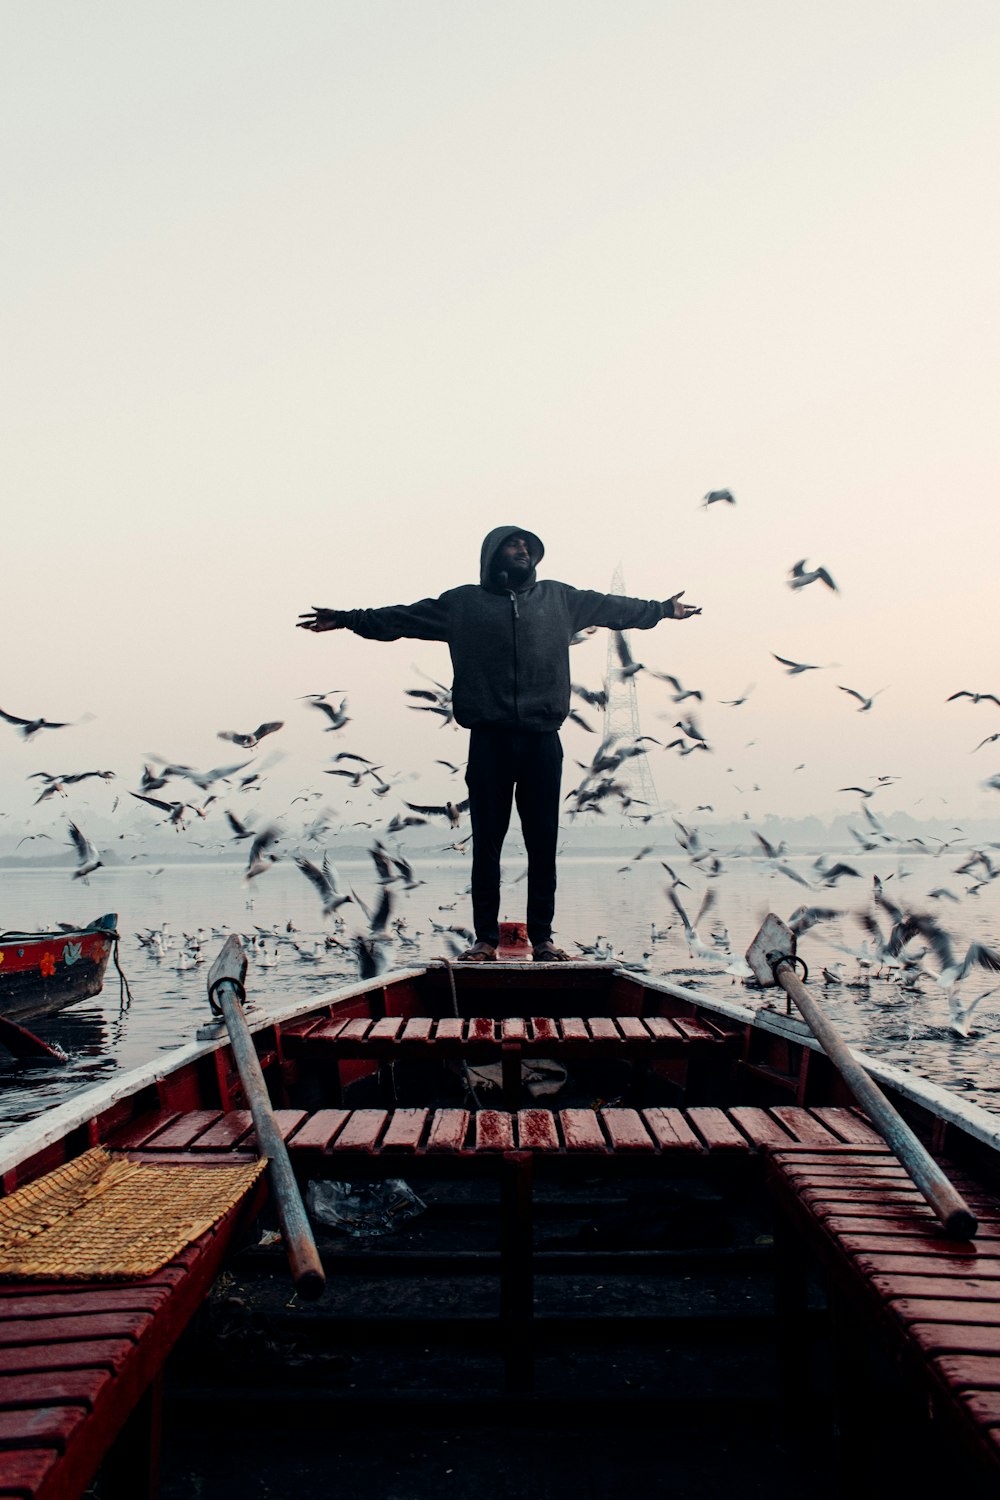 Un uomo in piedi sulla cima di una barca circondato da uccelli